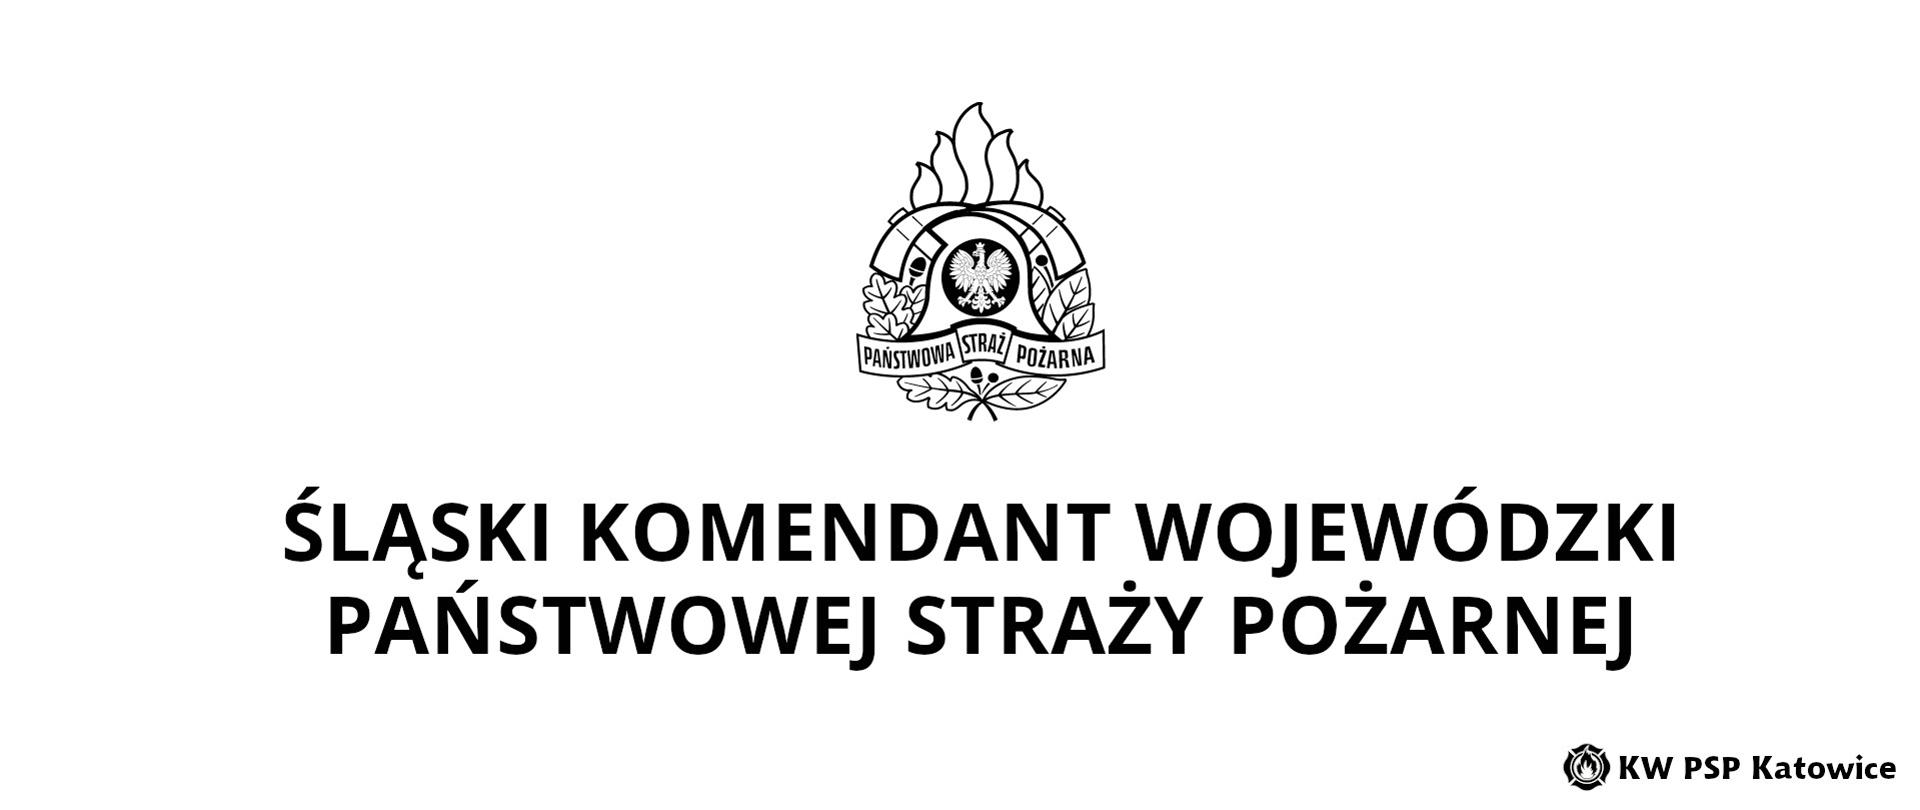 Ilustracja przedstawia na białym tle, na środku u góry biało-czarny logotyp Państwowej Straży Pożarnej. Poniżej napis Śląski Komendant Państwowej Straży Pożarnej. W prawym dolnym rogu napis KW PSP Katowice